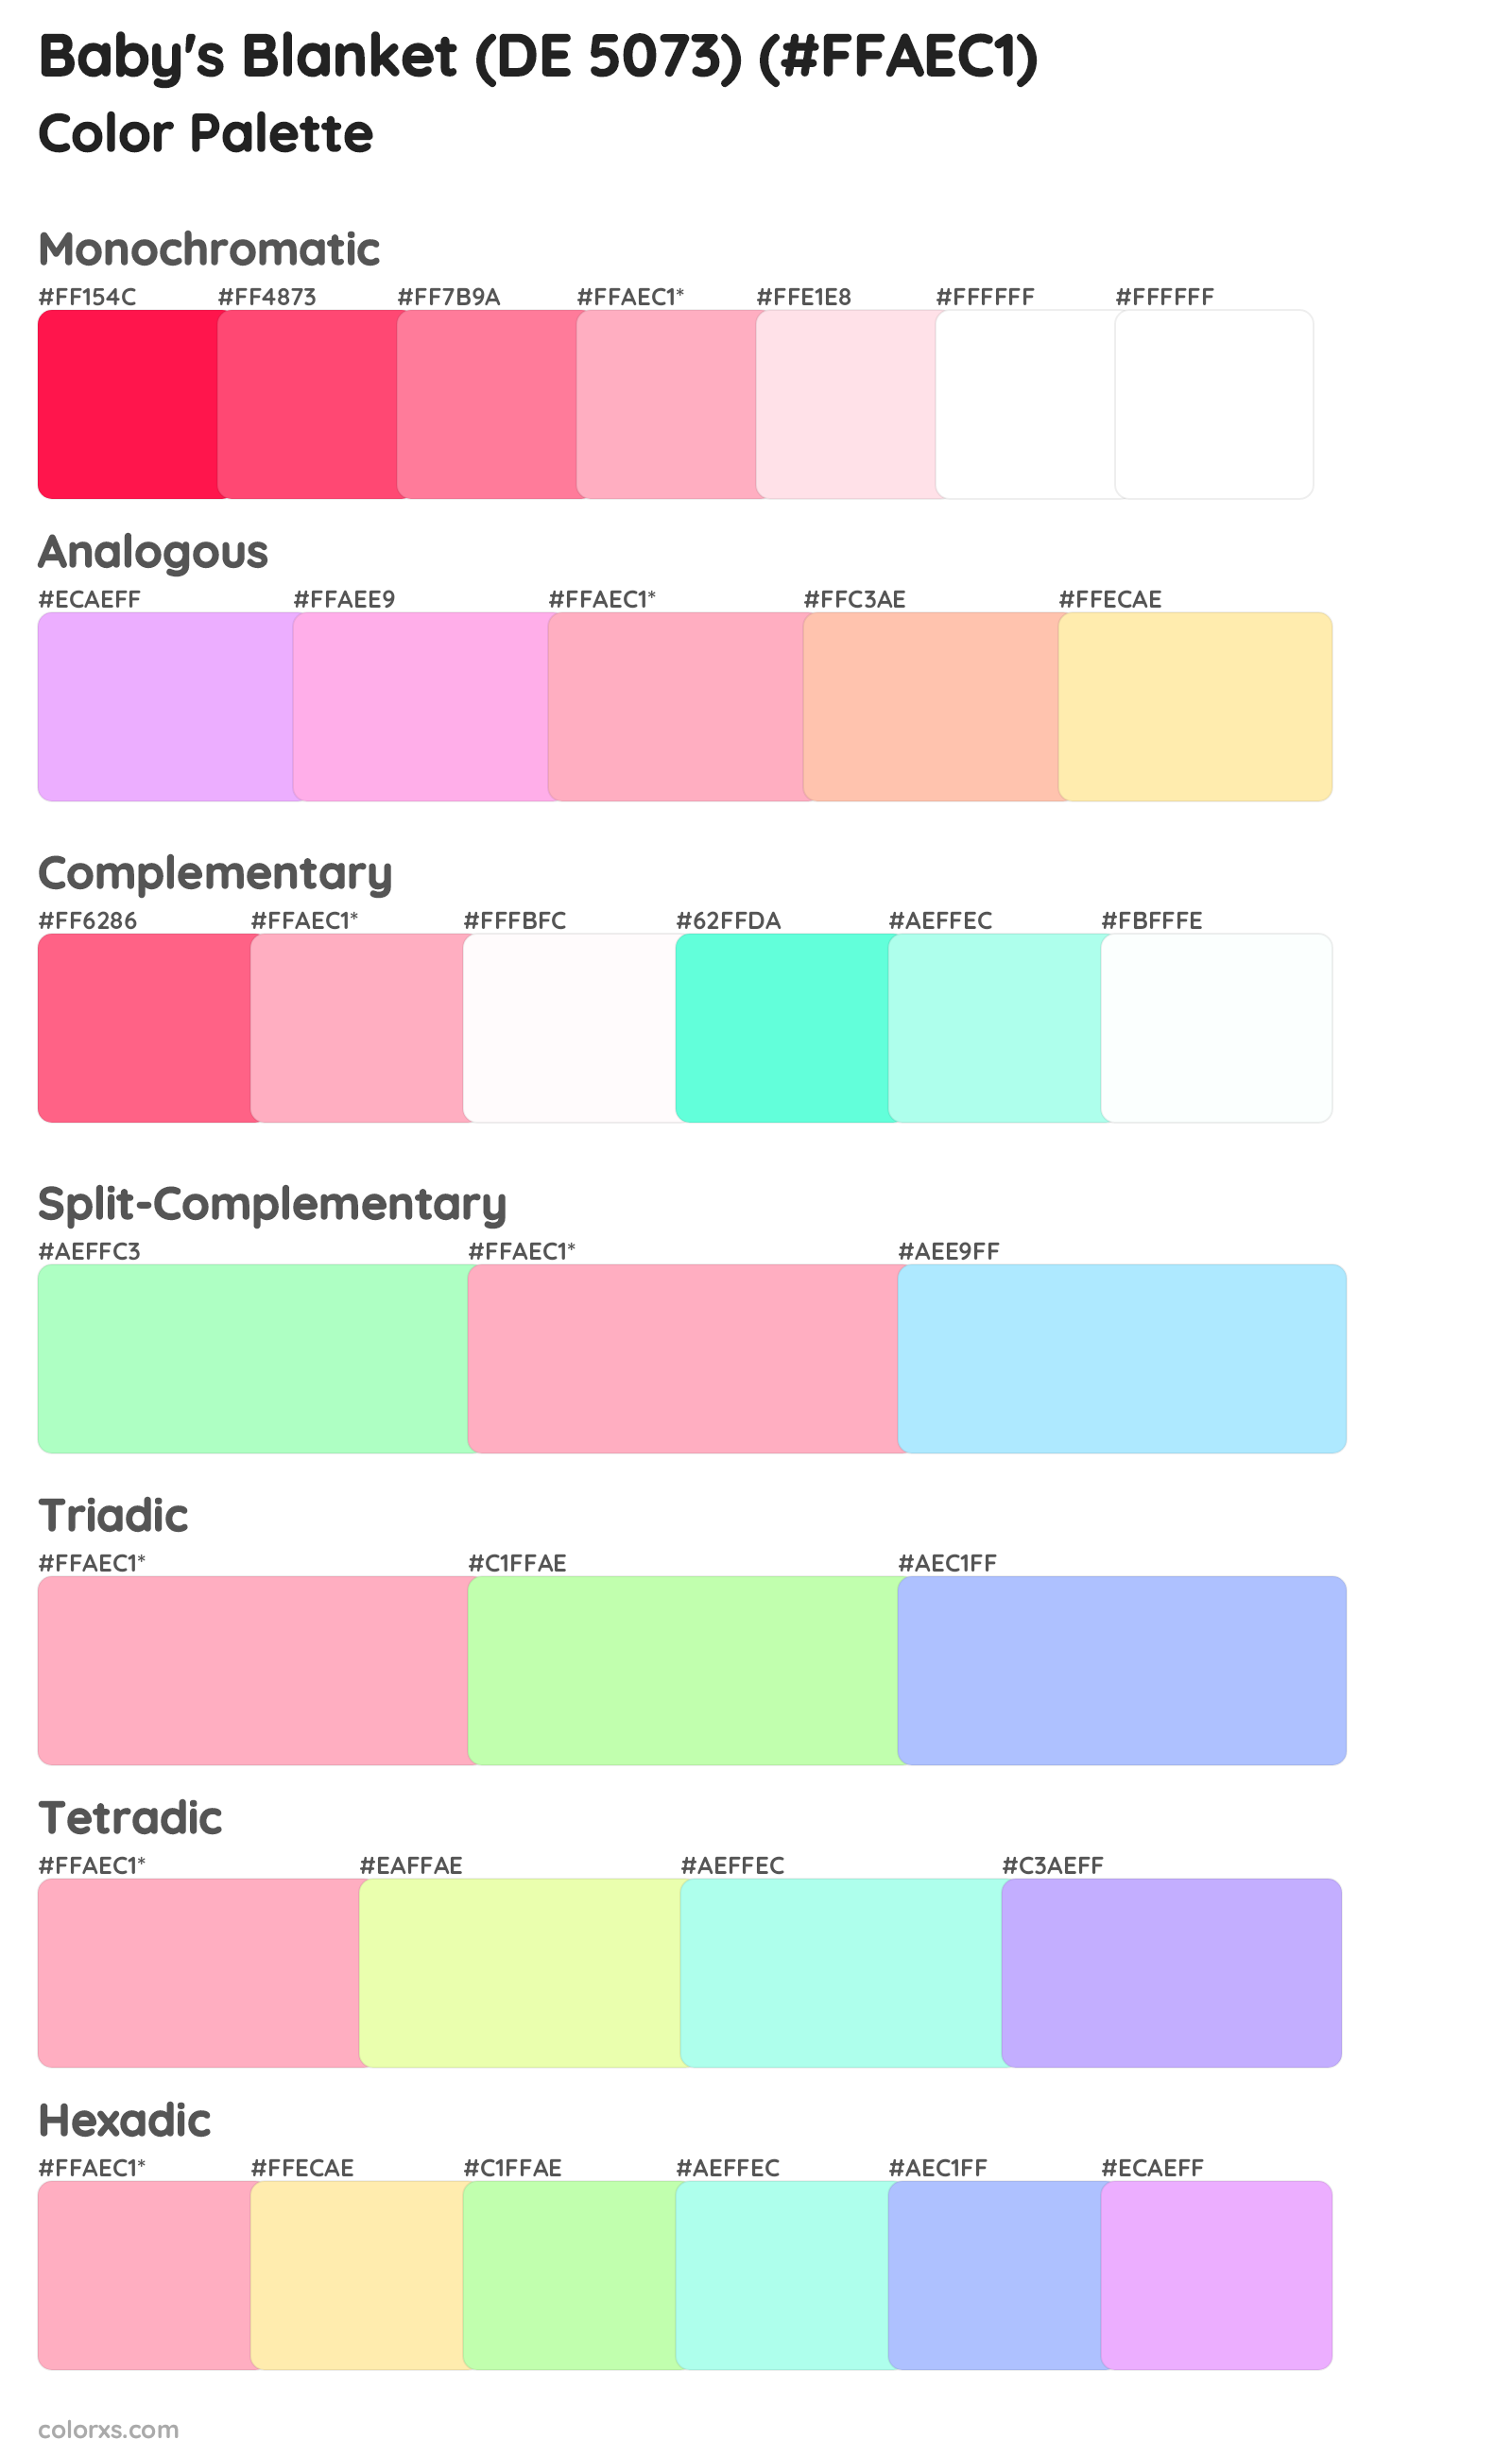 Baby's Blanket (DE 5073) Color Scheme Palettes